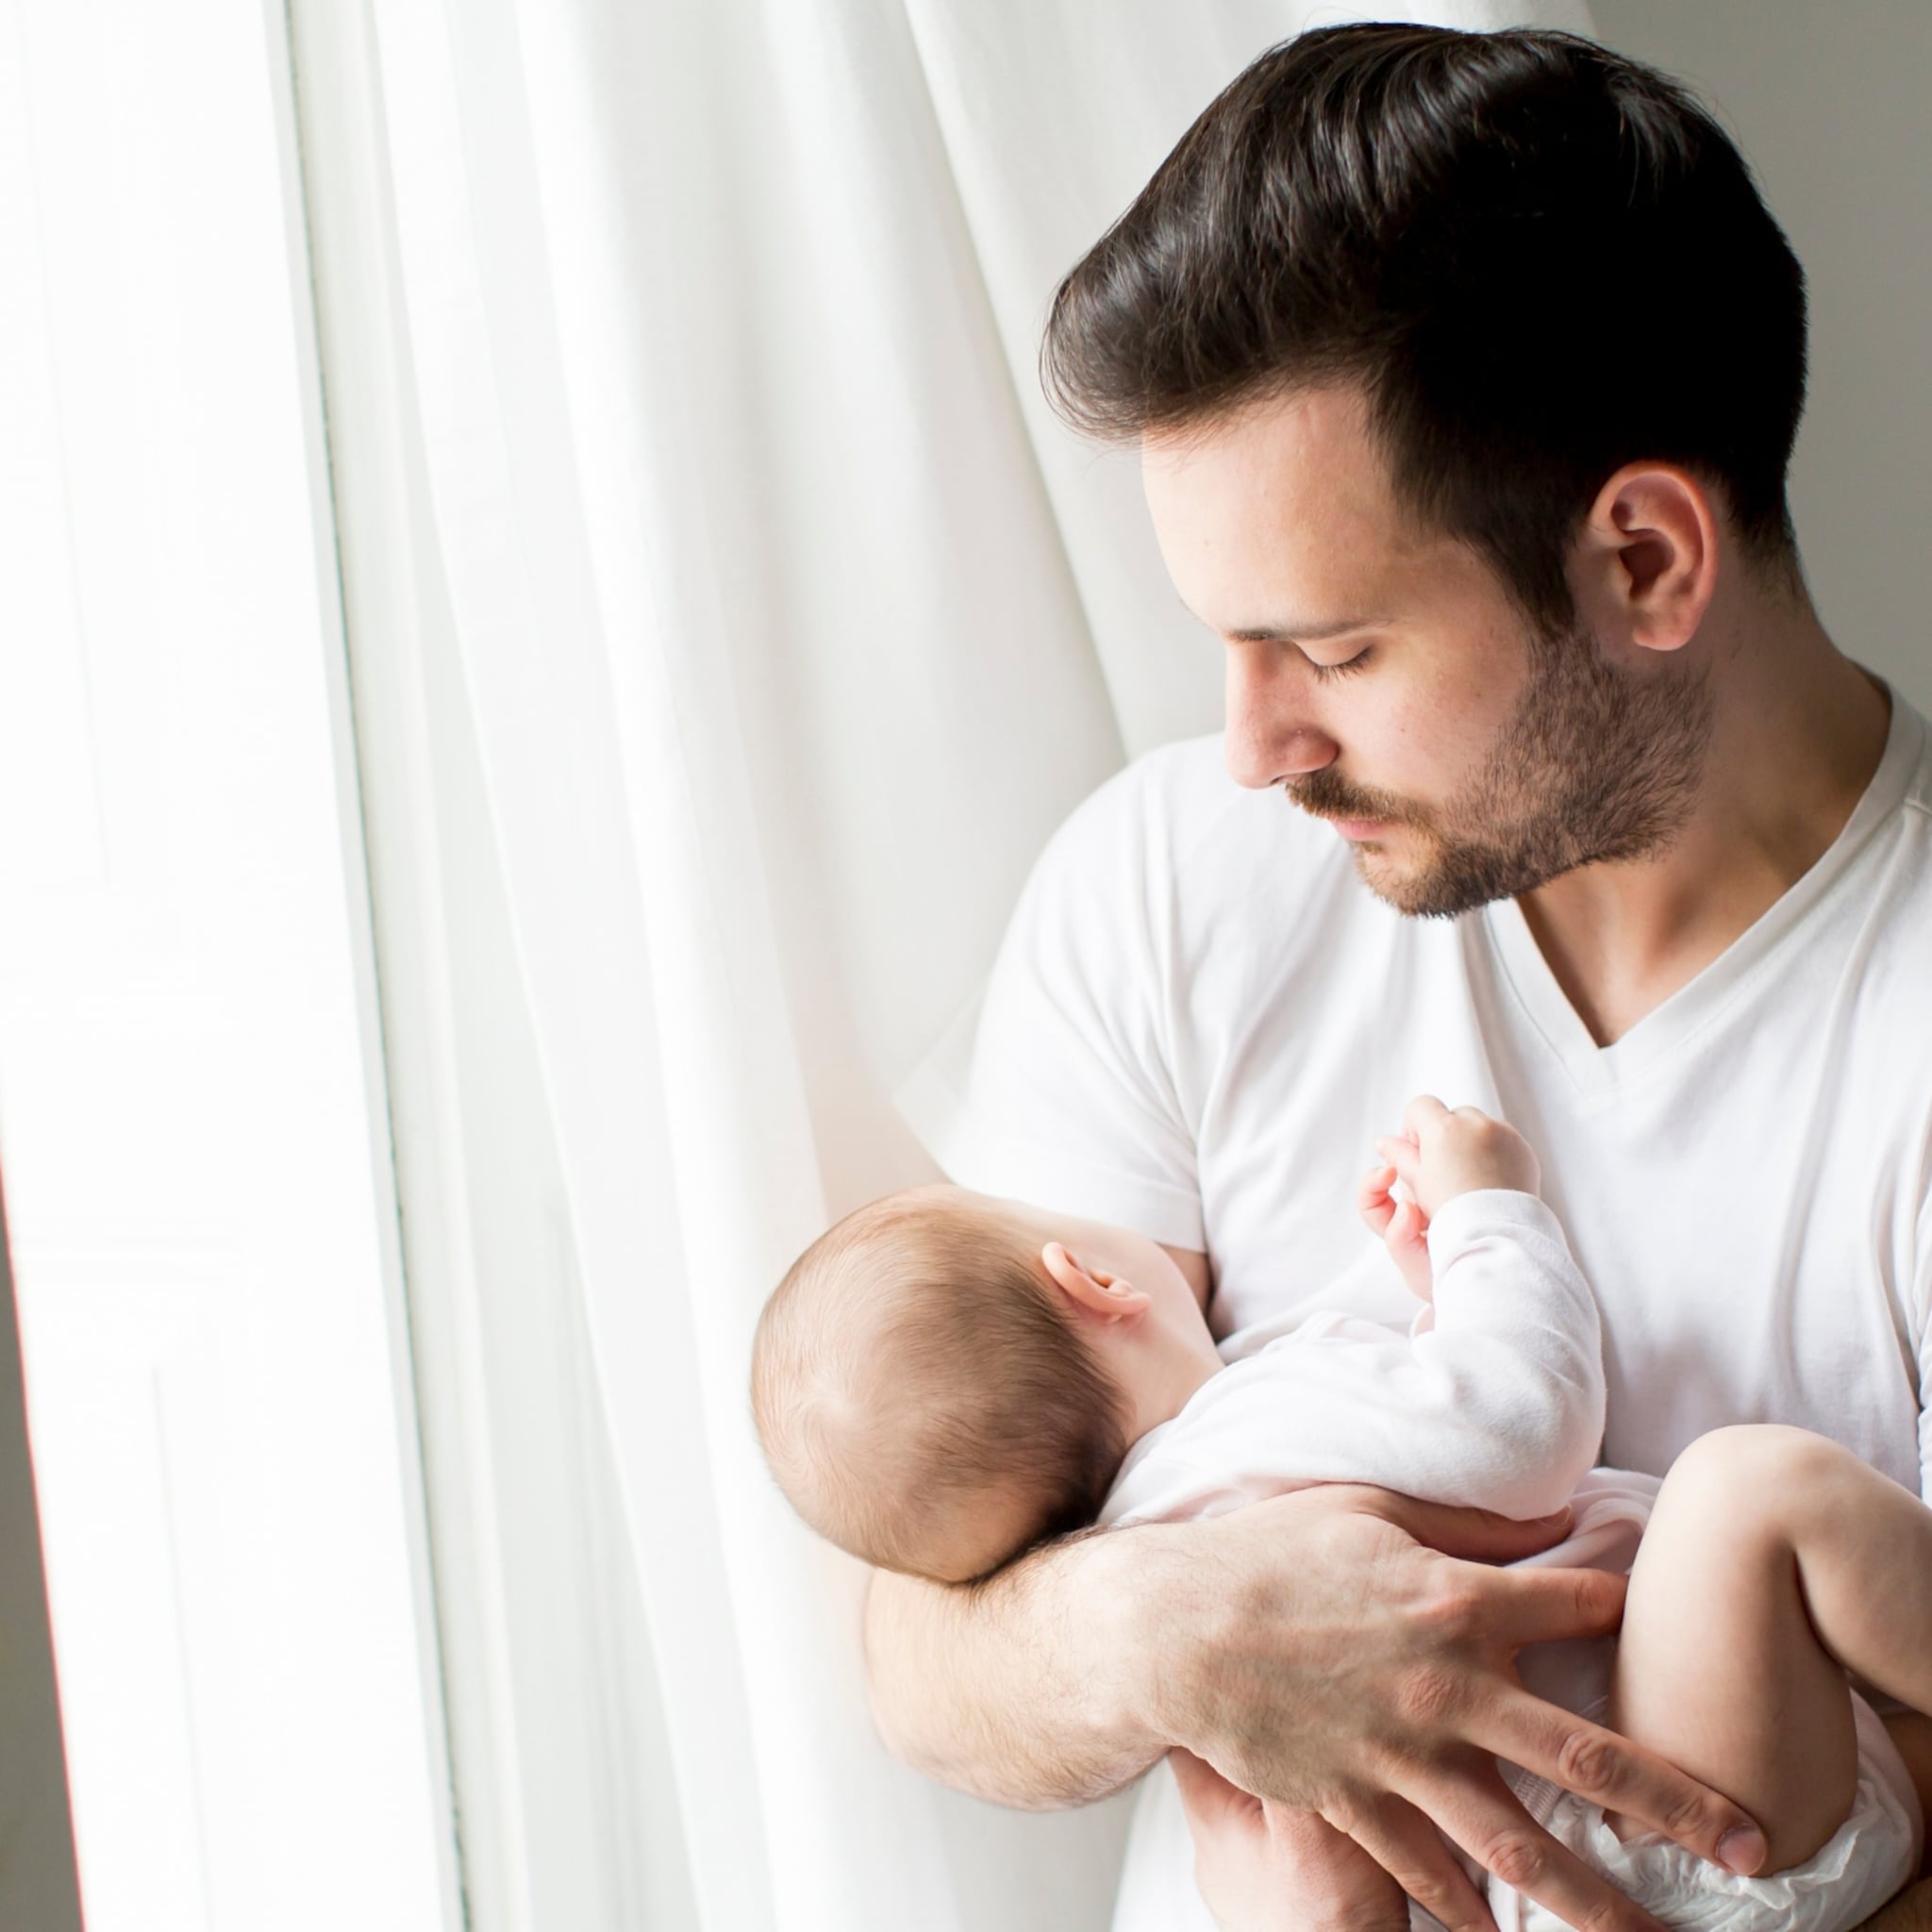 waarom-we-bij-een-heftige-bevalling-meer-aandacht-moeten-hebben-voor-vaders